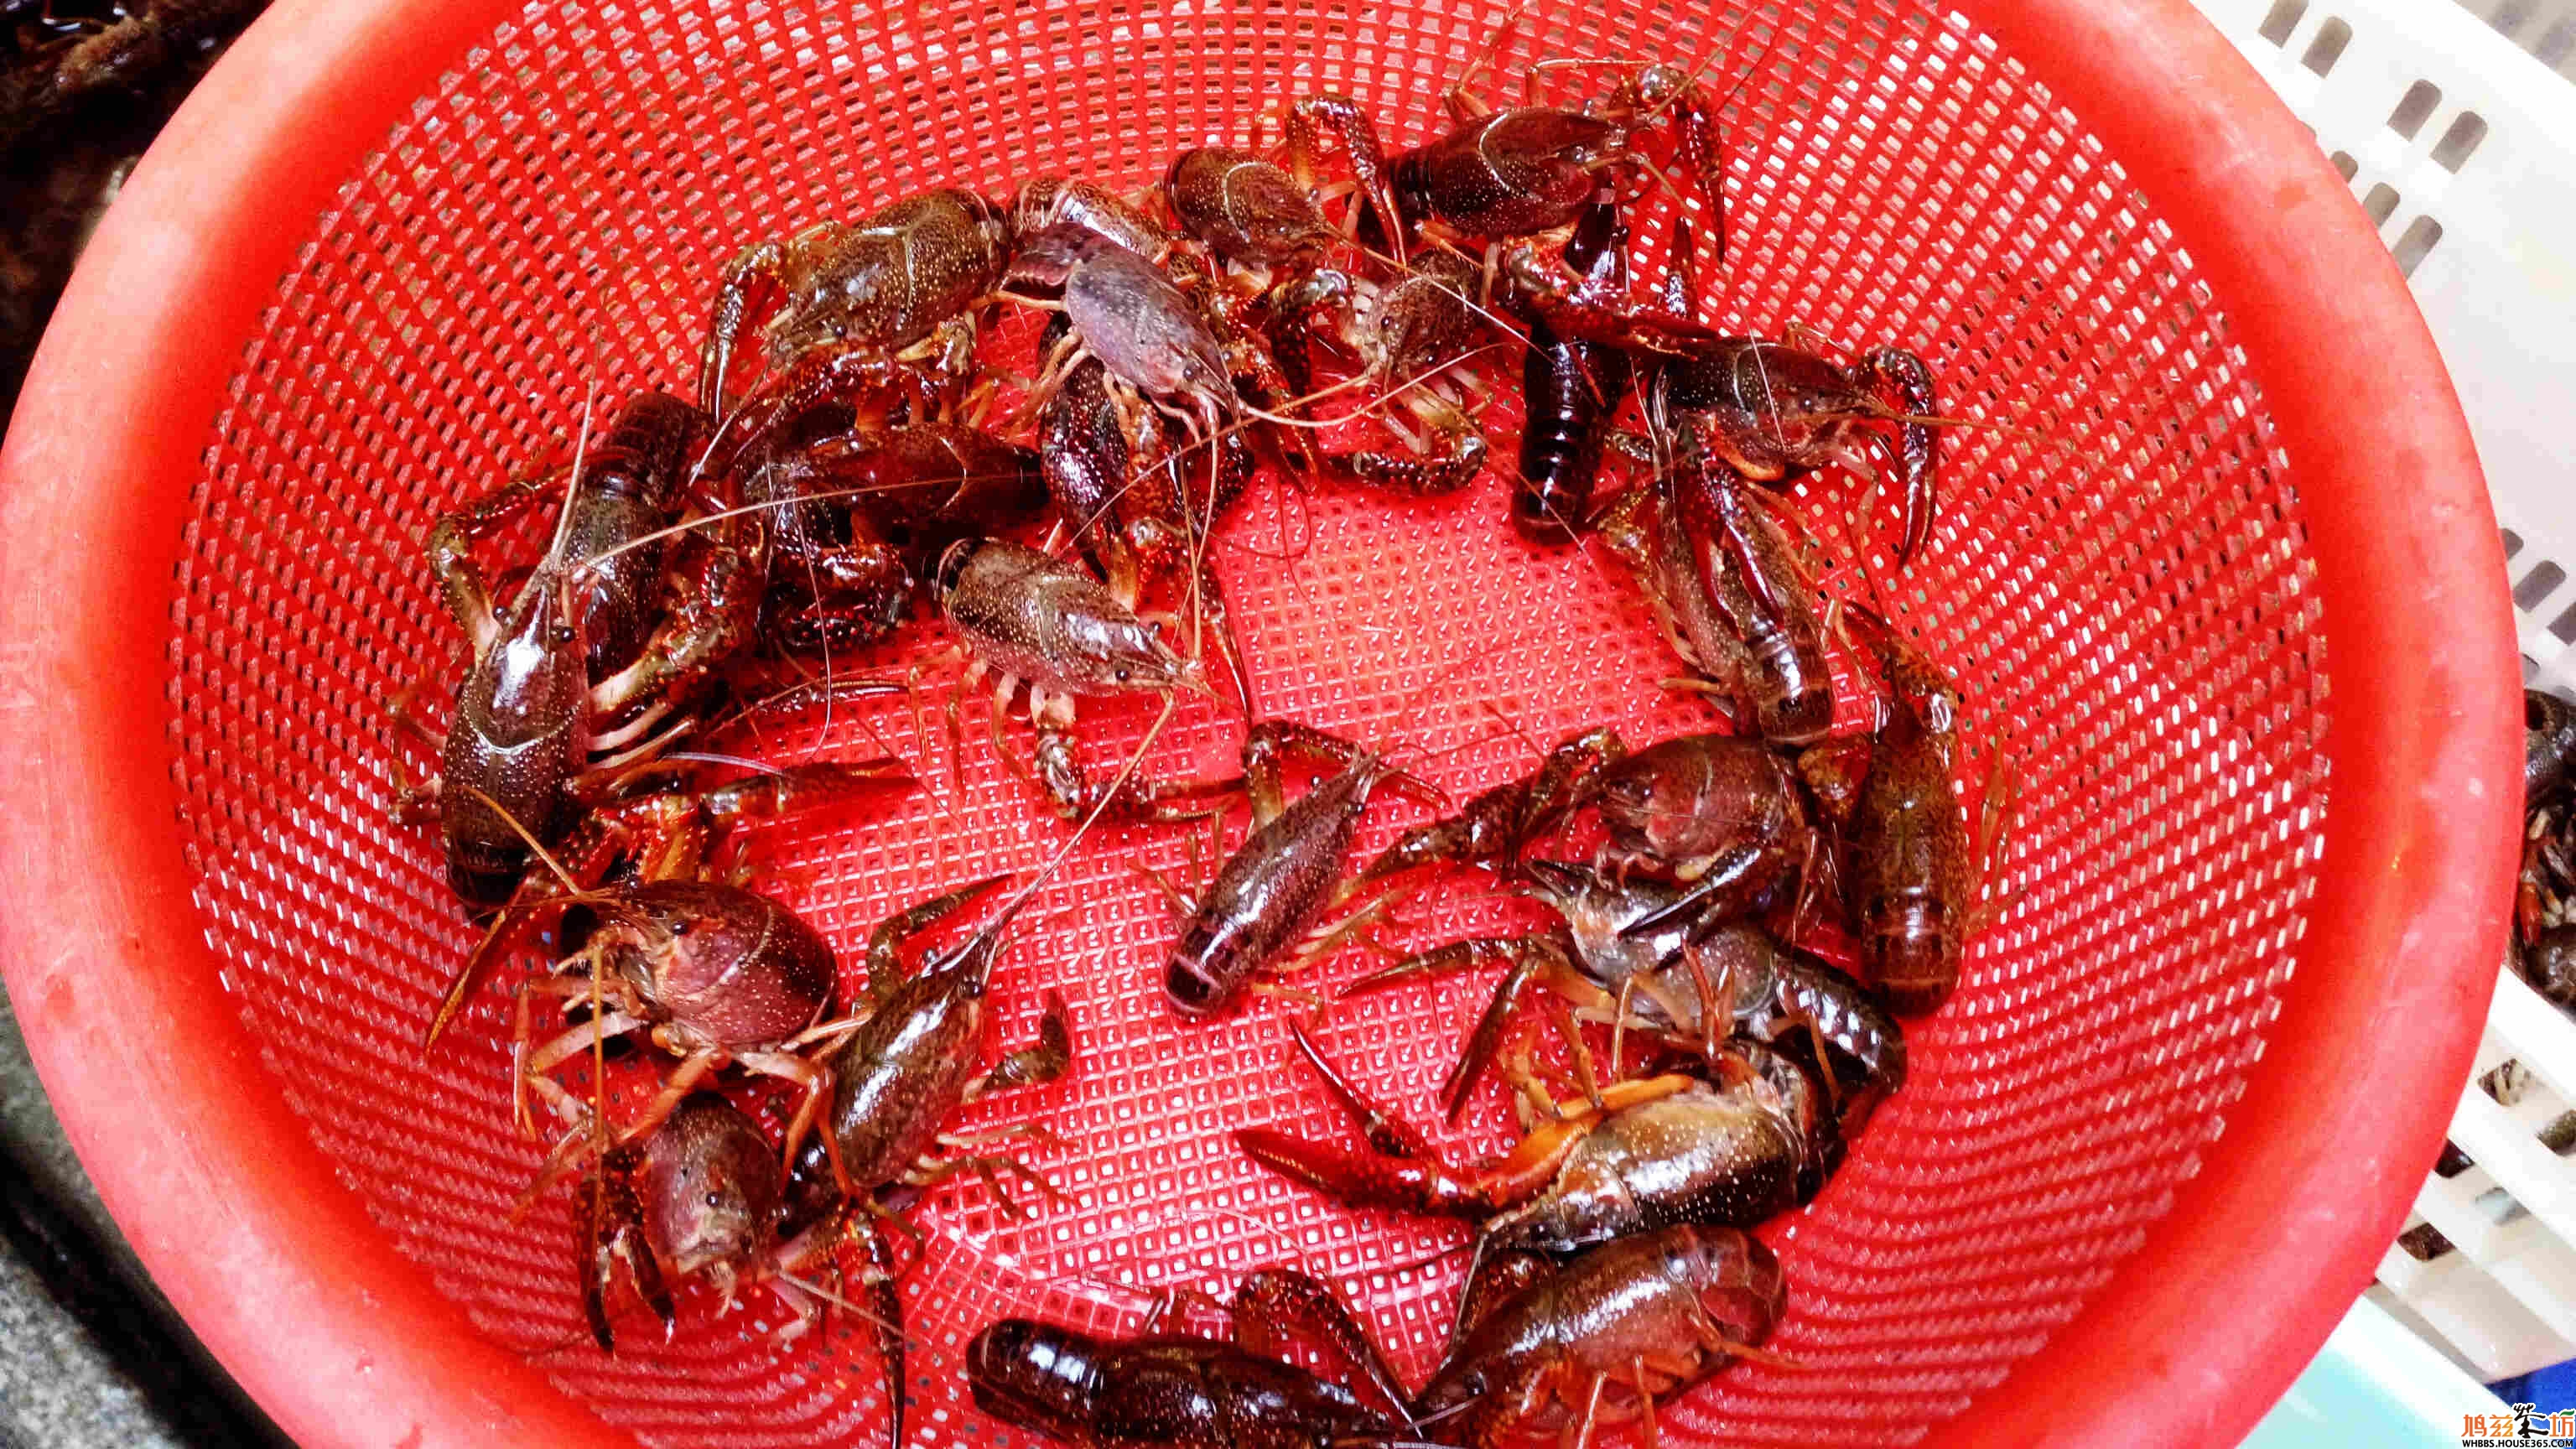 最好的龙虾都被挑选供食客享用,死的瘪的都扔在旁边报废处理.